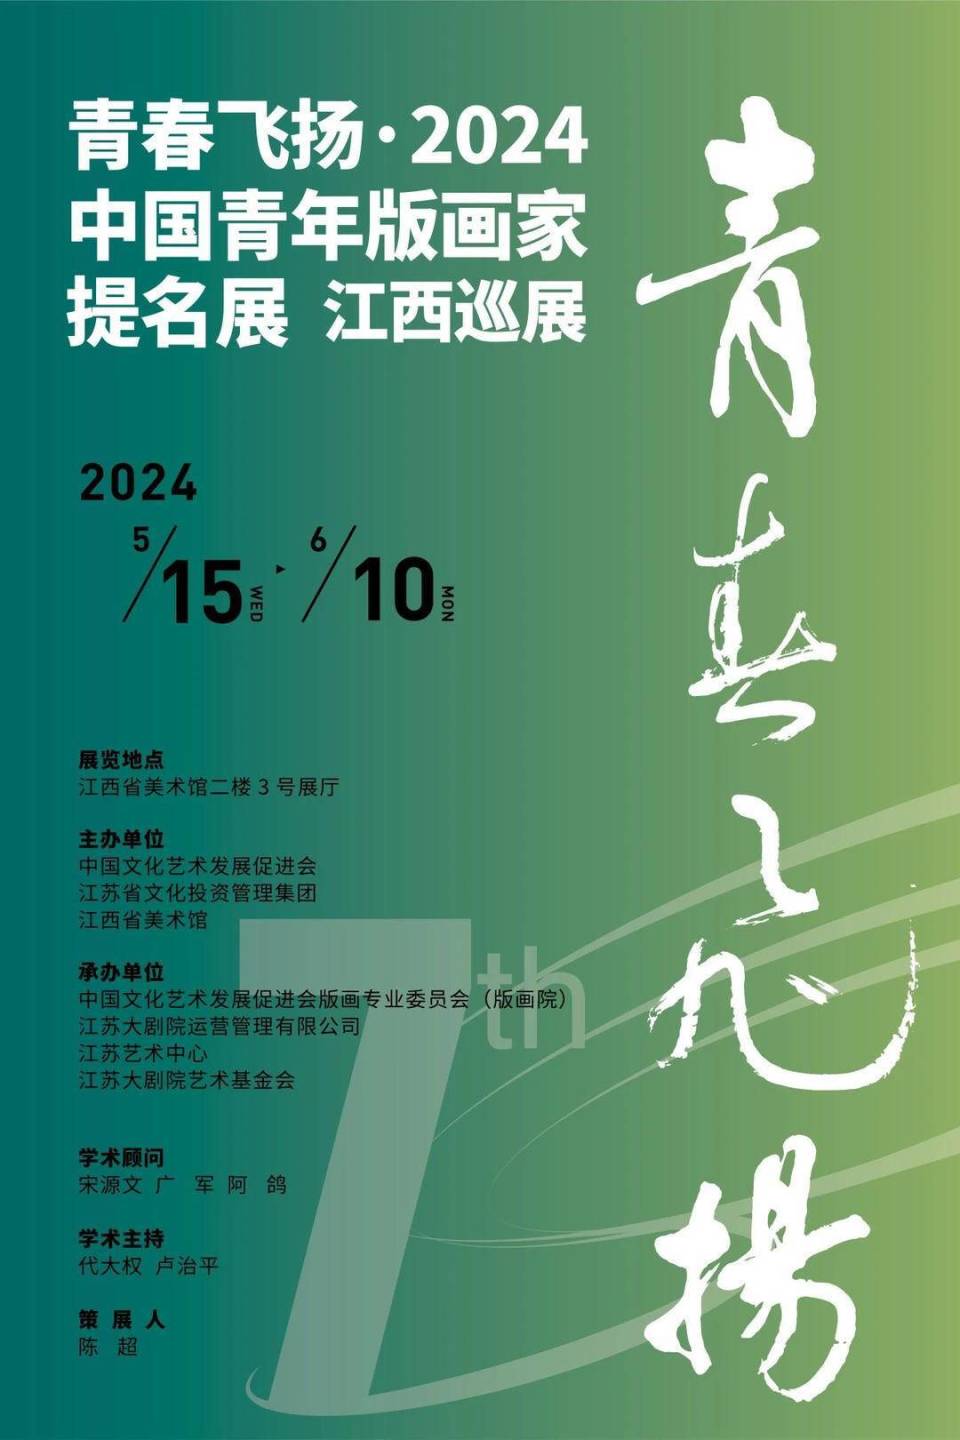 青春飞扬·2024中国青年版画家提名展(江西巡展)在江西省美术馆隆重